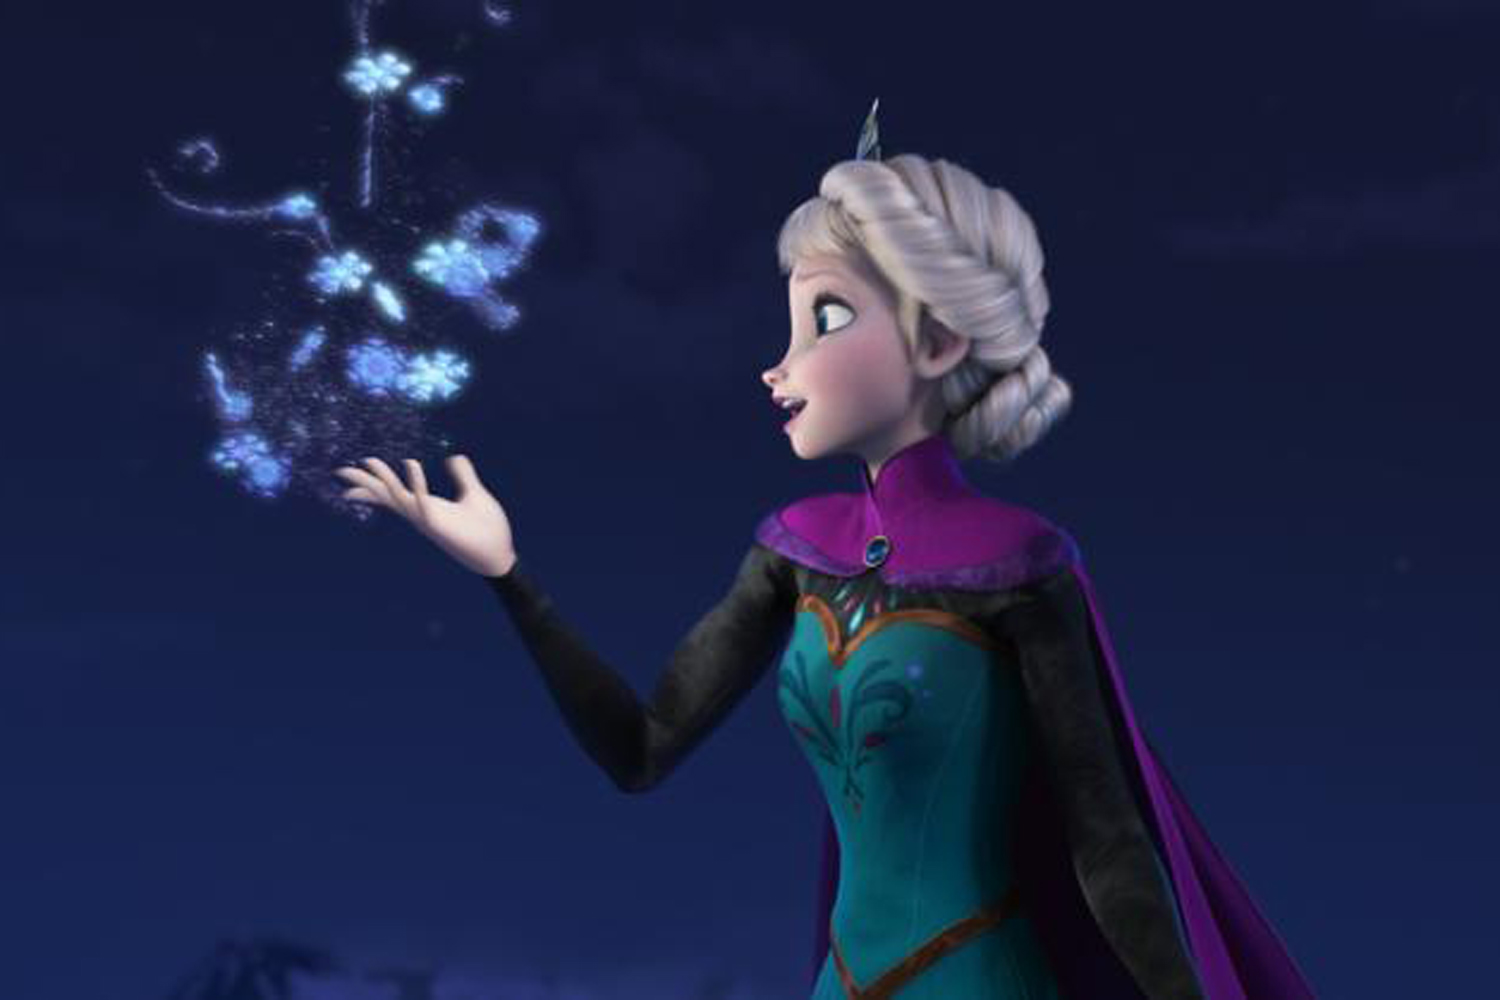 trabajador Fabricante Generalmente Elsa From Frozen Is the Most Popular Disney Princess | Time